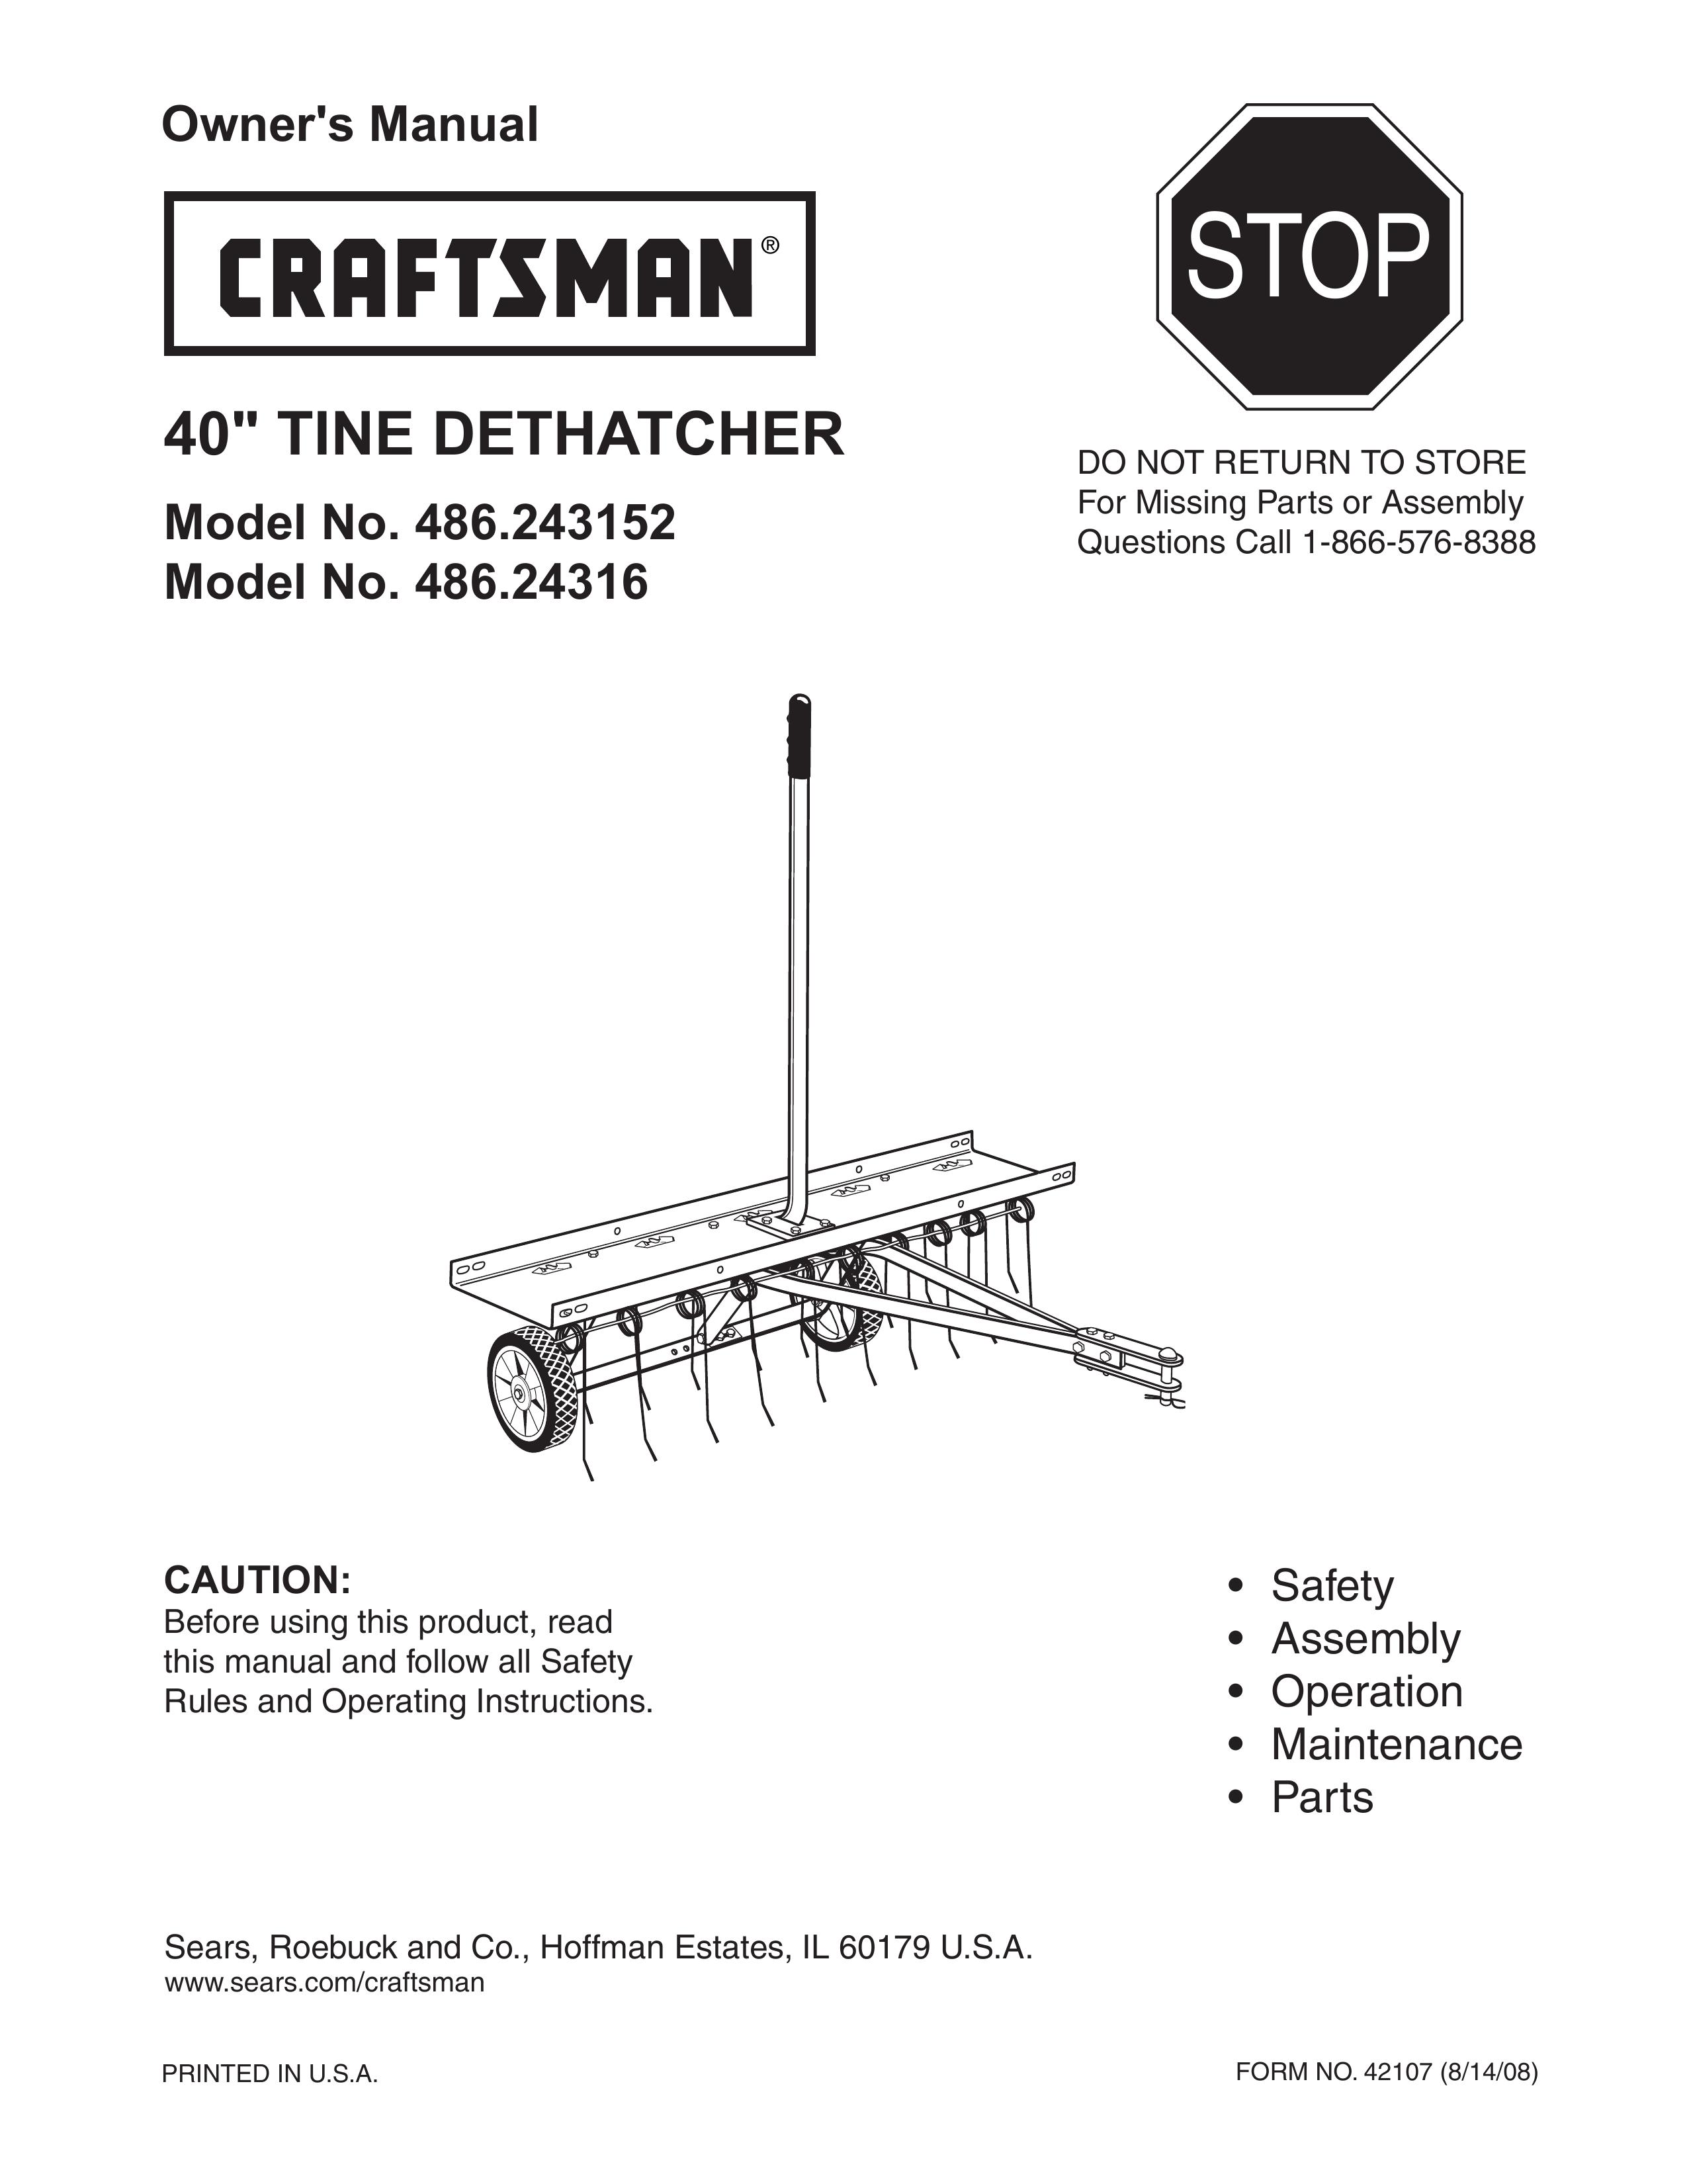 Craftsman 486.243152 Lawn Aerator User Manual